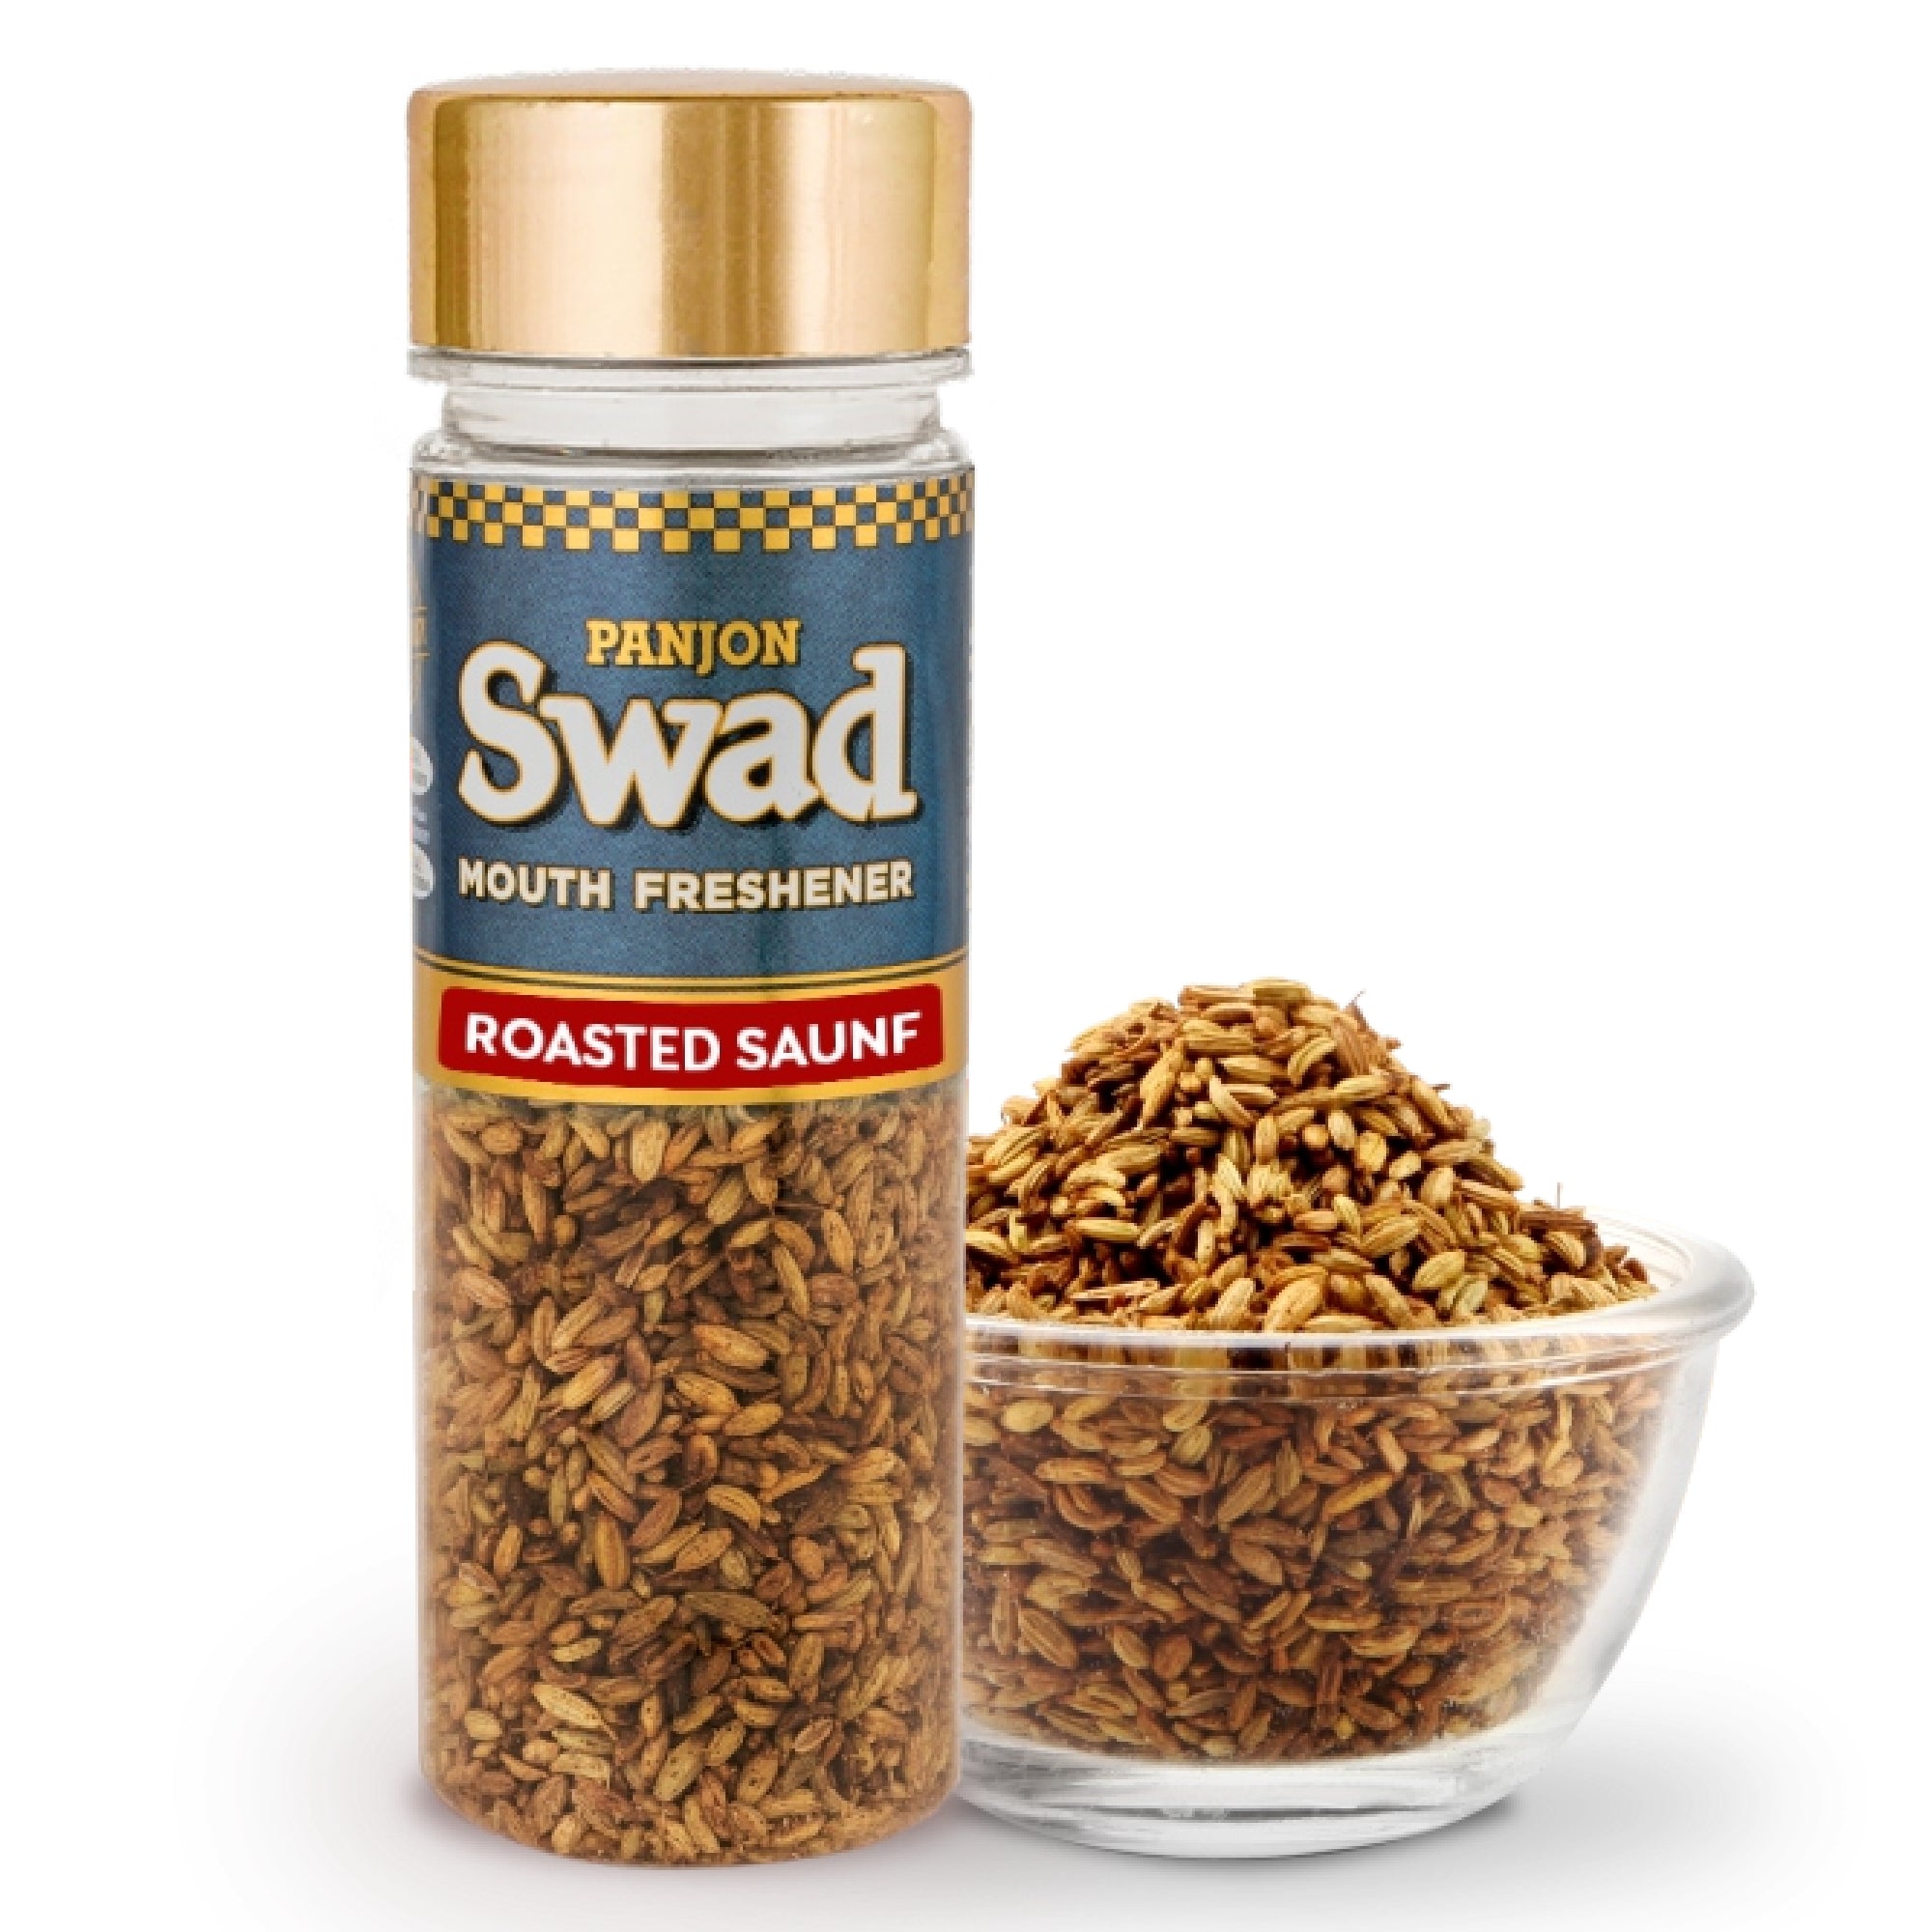 Swad Roasted Saunf Mukhwas Mouth Freshener Bottle, 60 g